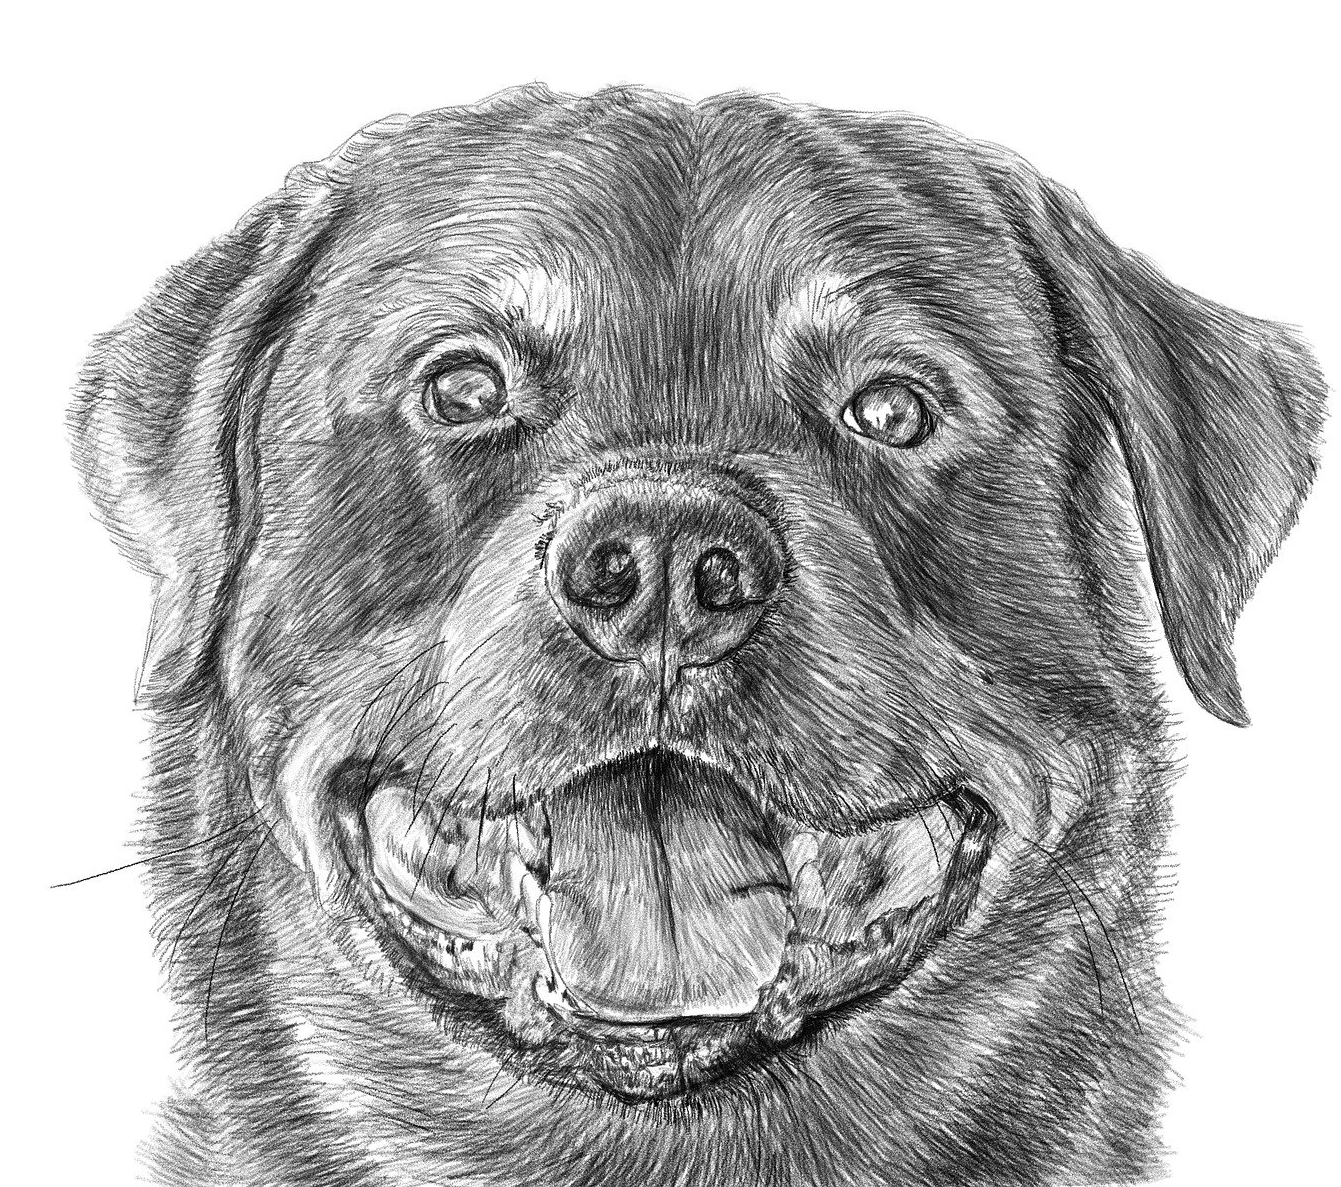 Disegno da colorare di cucciolo di cane rottweiler (testa)